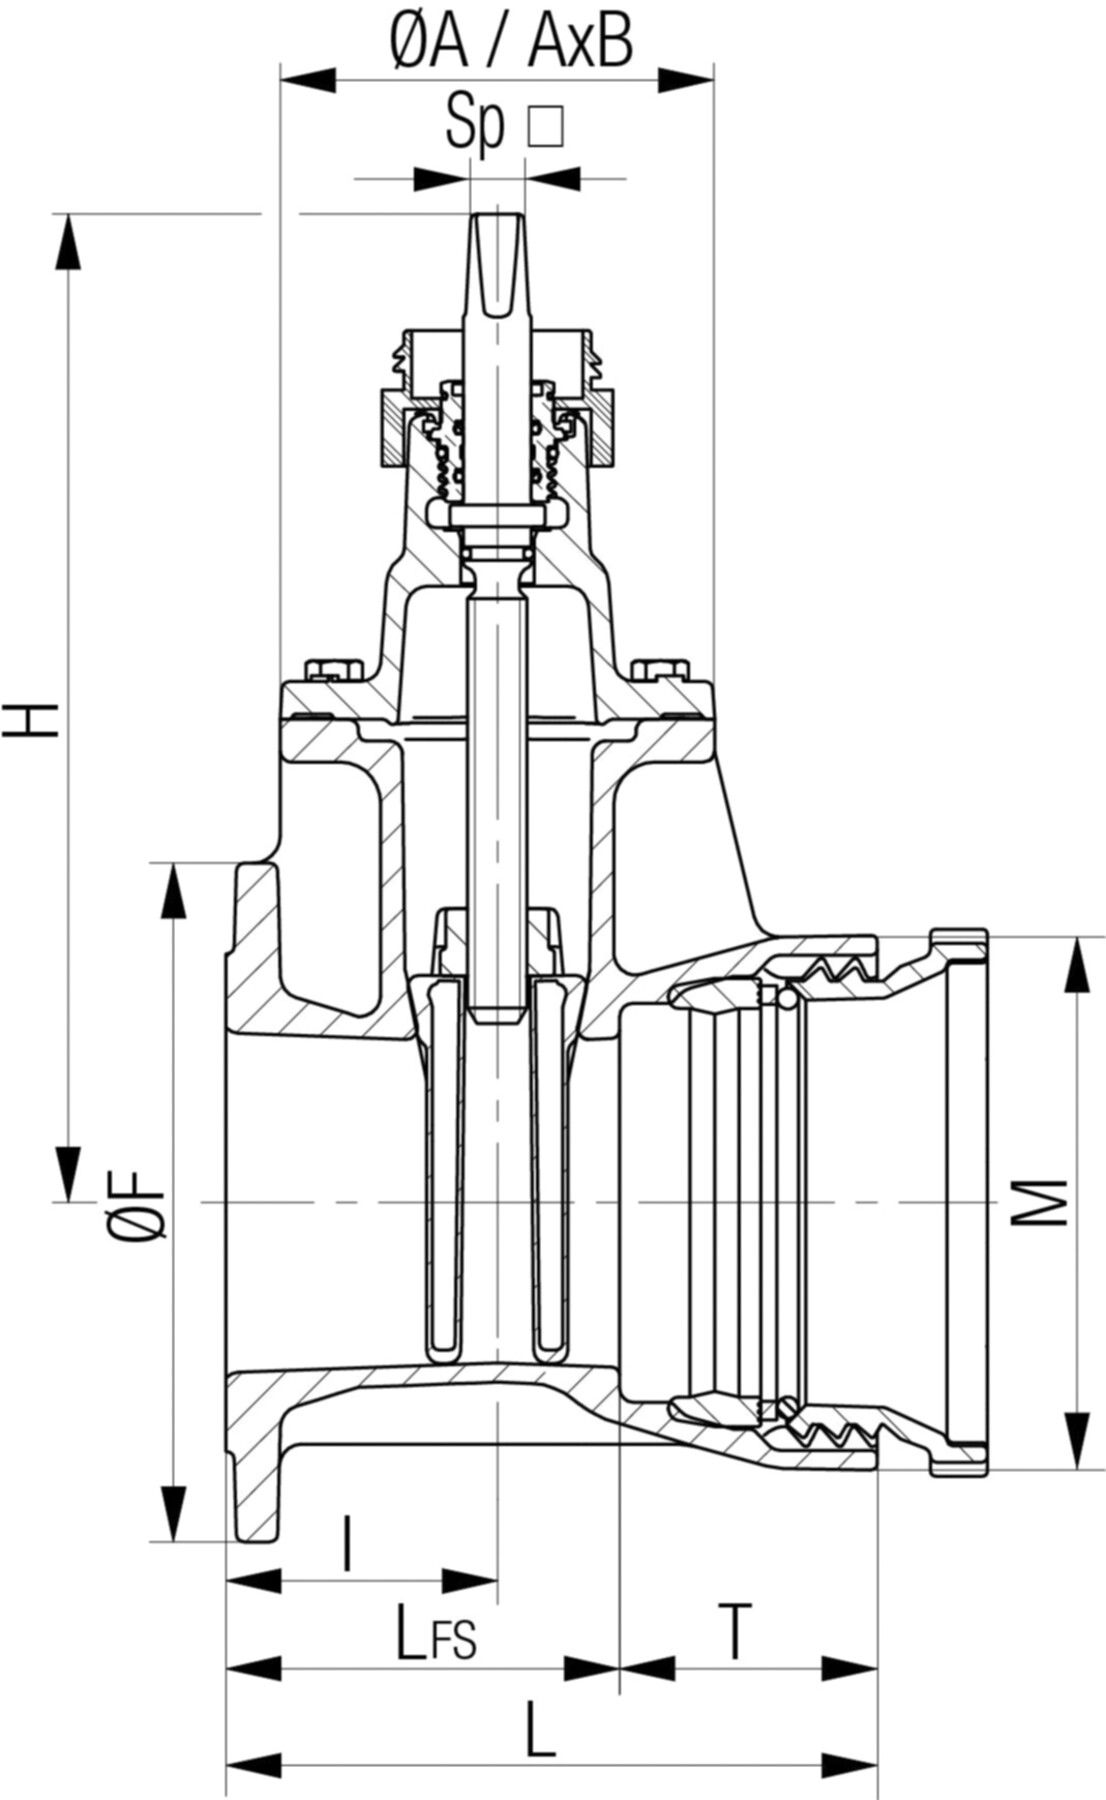 Flansch-/Schraubmuffenschieber Fig. 5420 DN 150 PN 10/16 - Von Roll Armaturen